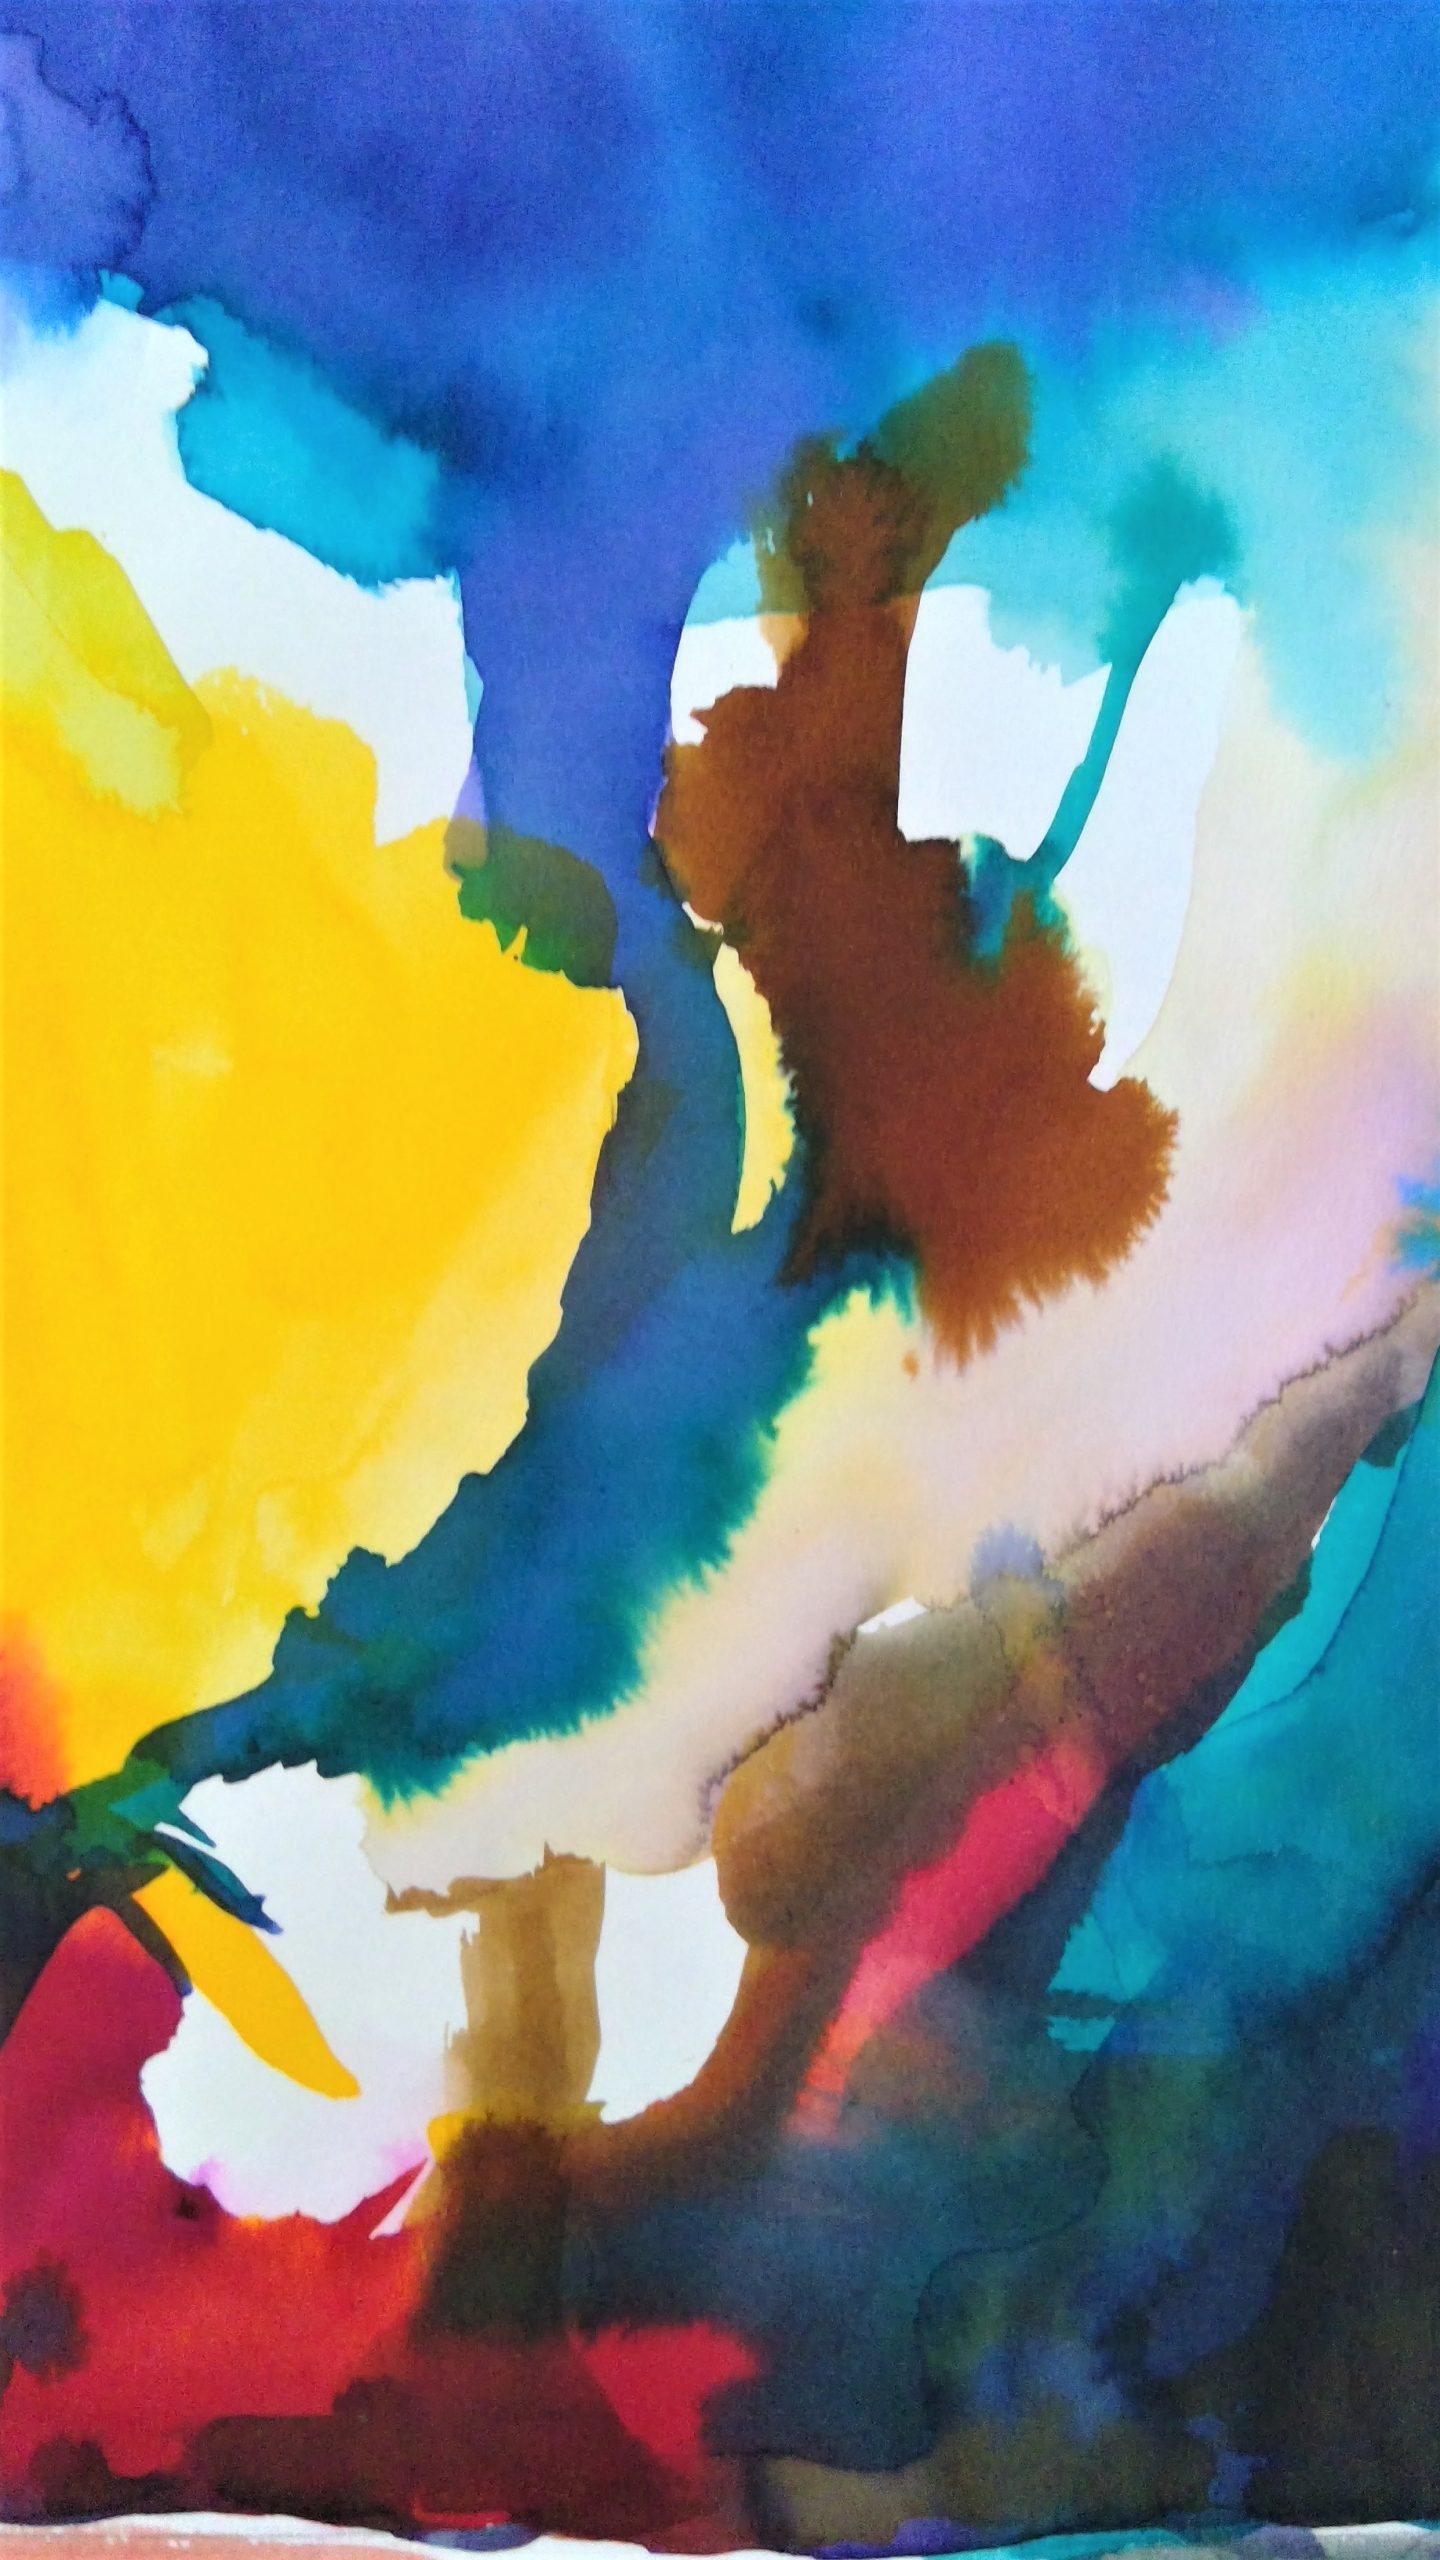 Jasmine Brien, "Explosion de couleurs"